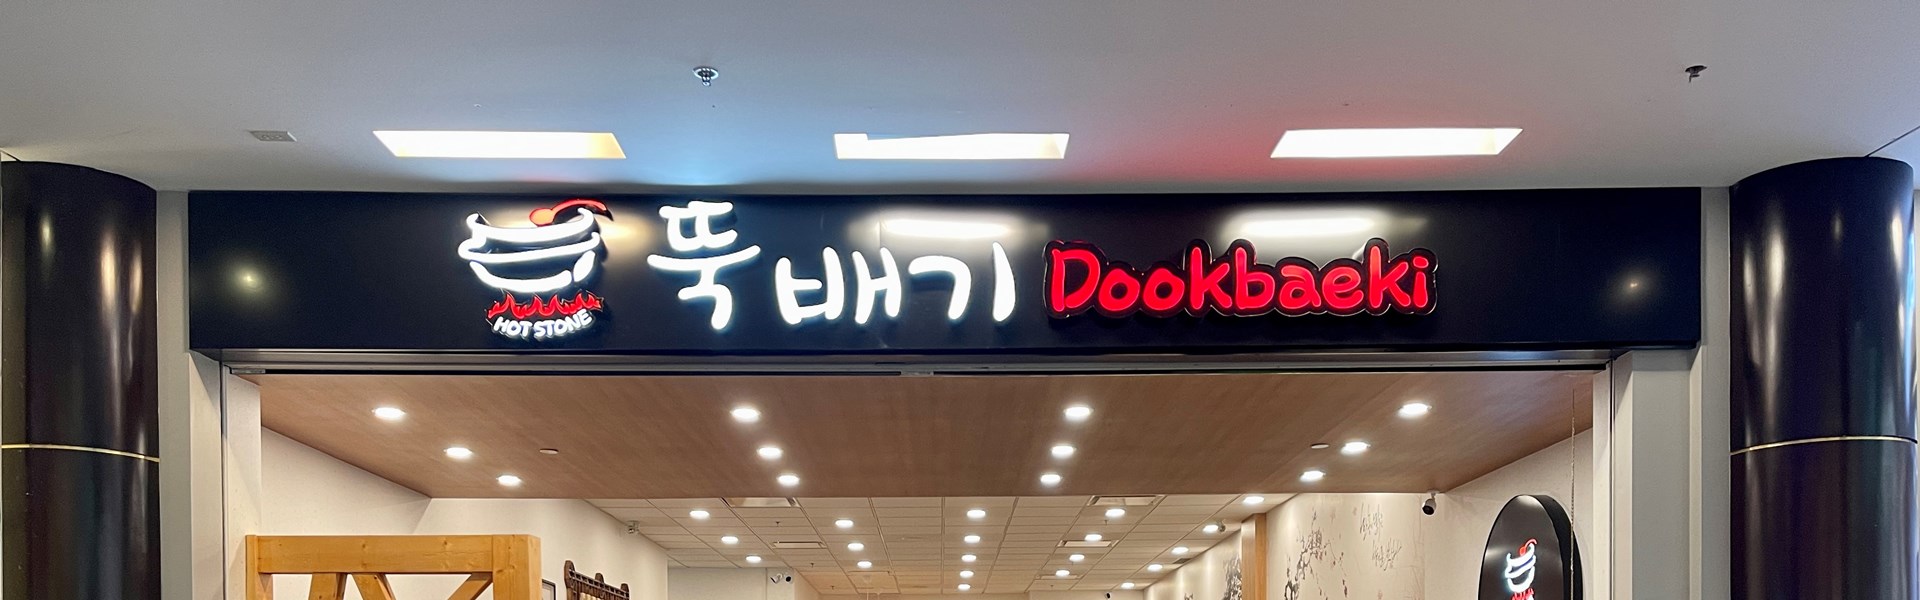 Dookbaeki Korean Restaurant